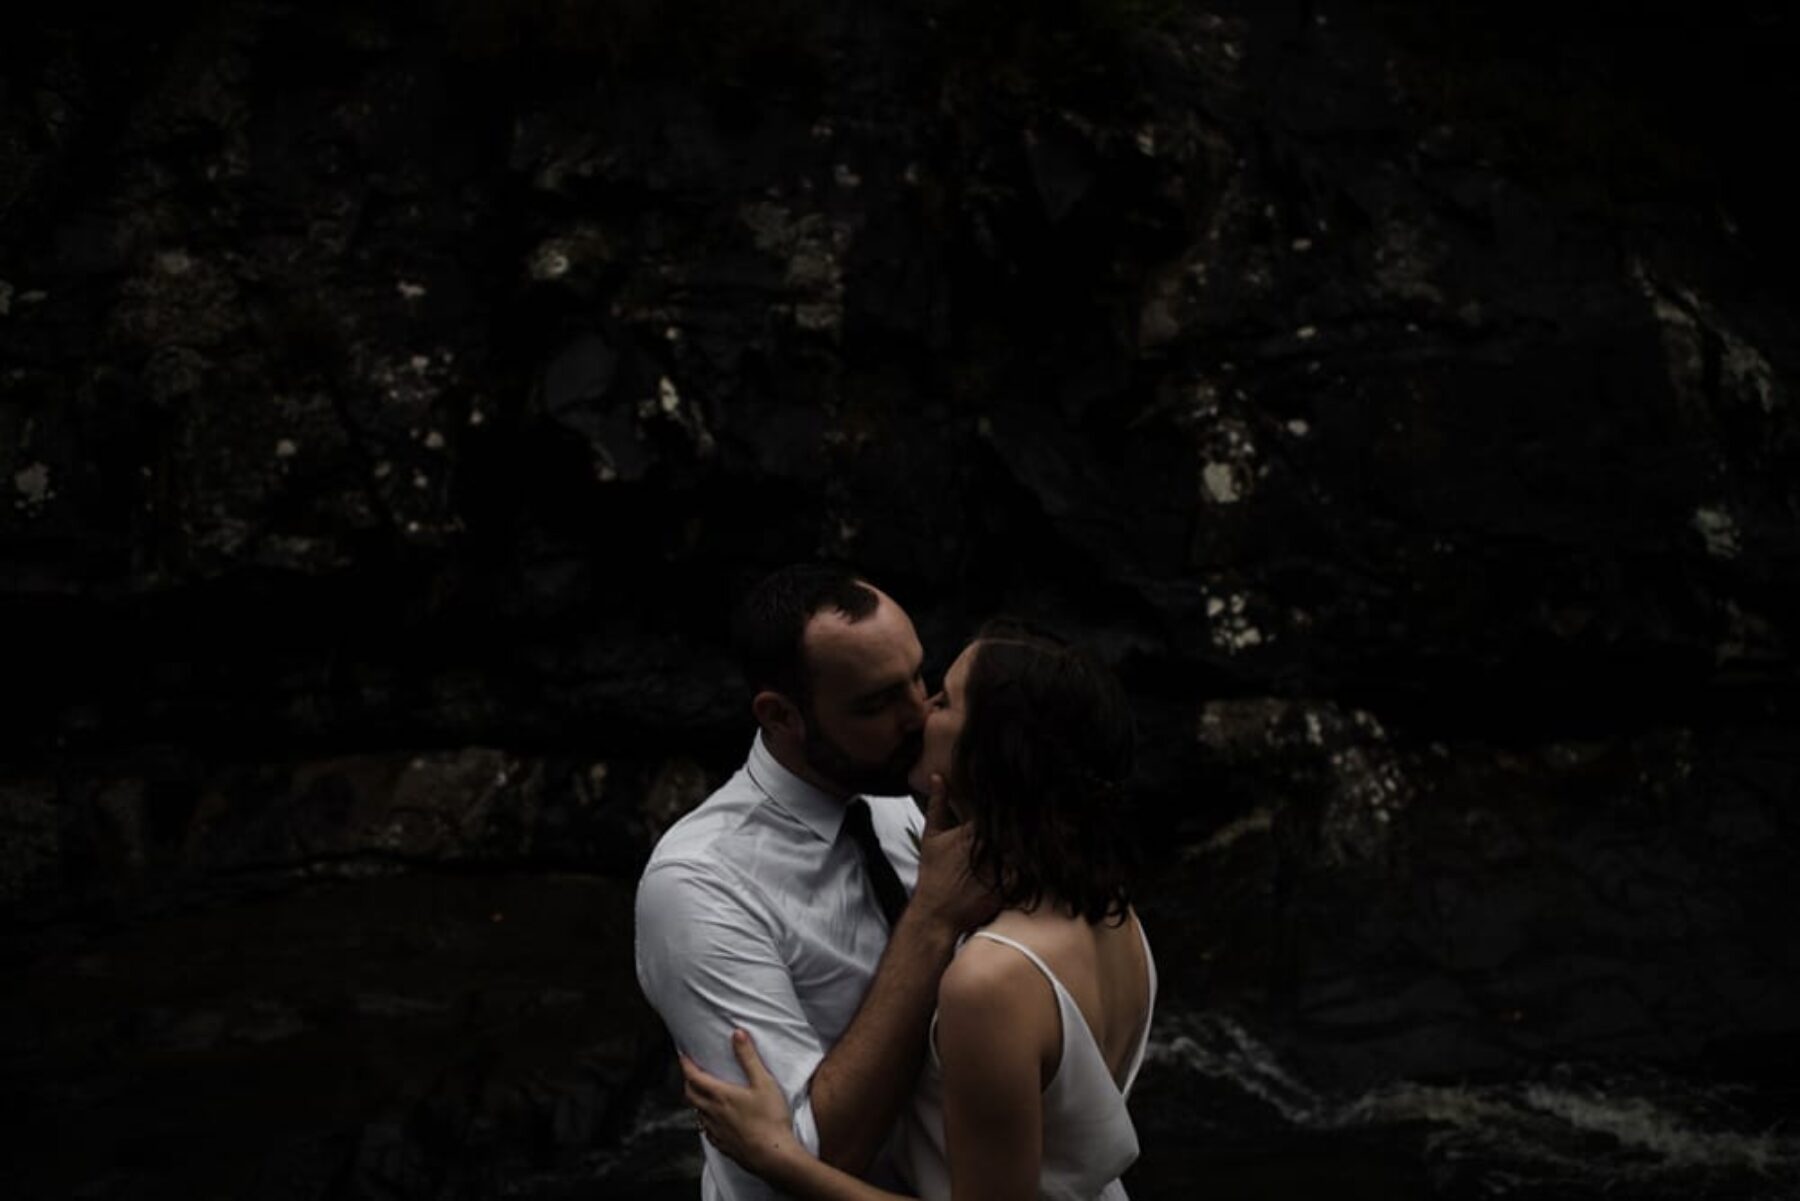 Tamborine Mountain elopement - photography by Aaron Shum